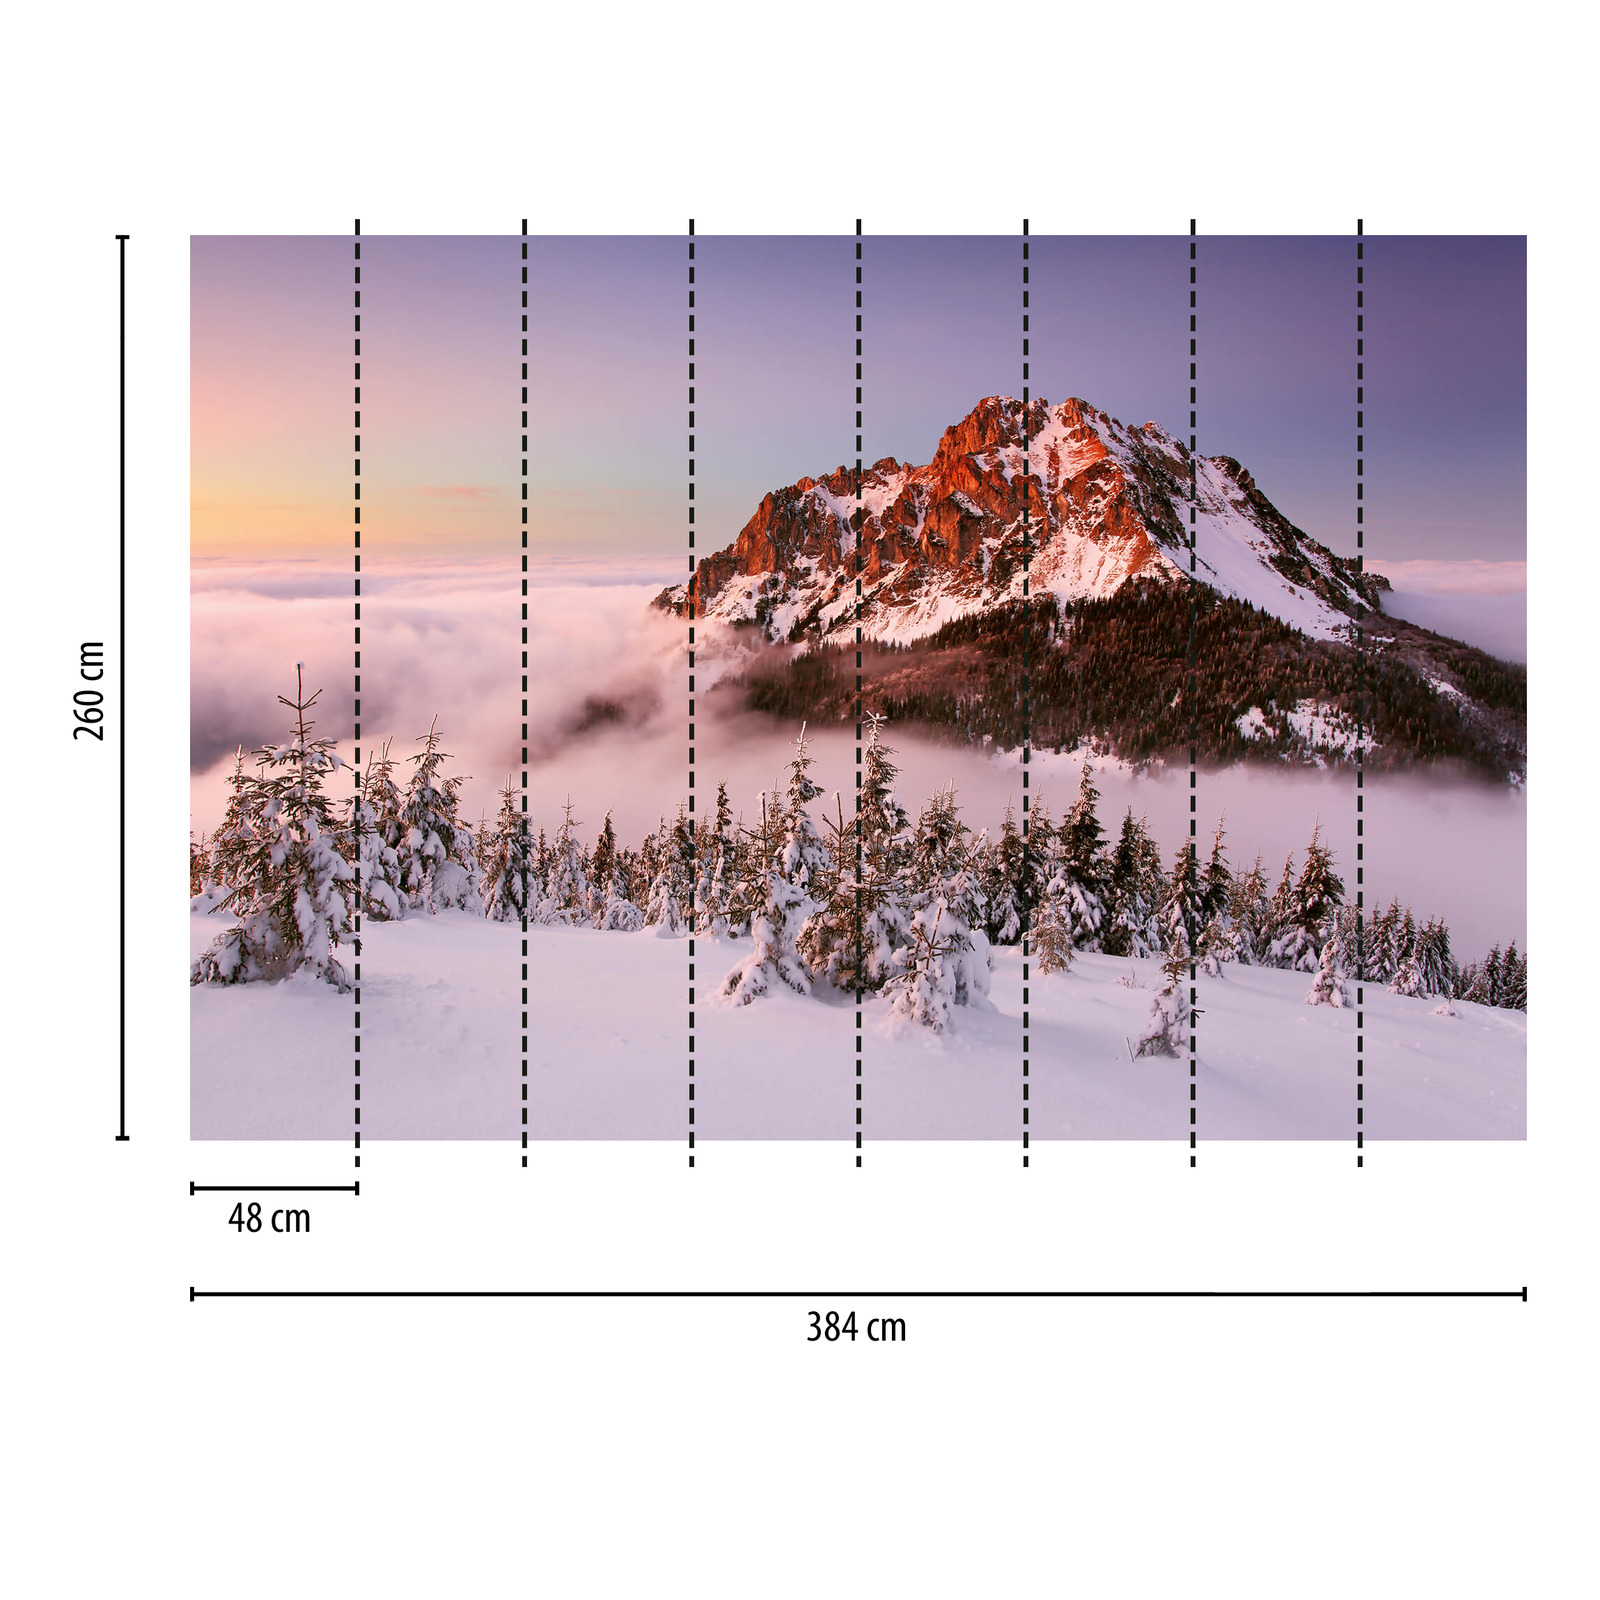             Papier peint panoramique sommet de montagne avec neige - blanc, marron, vert
        